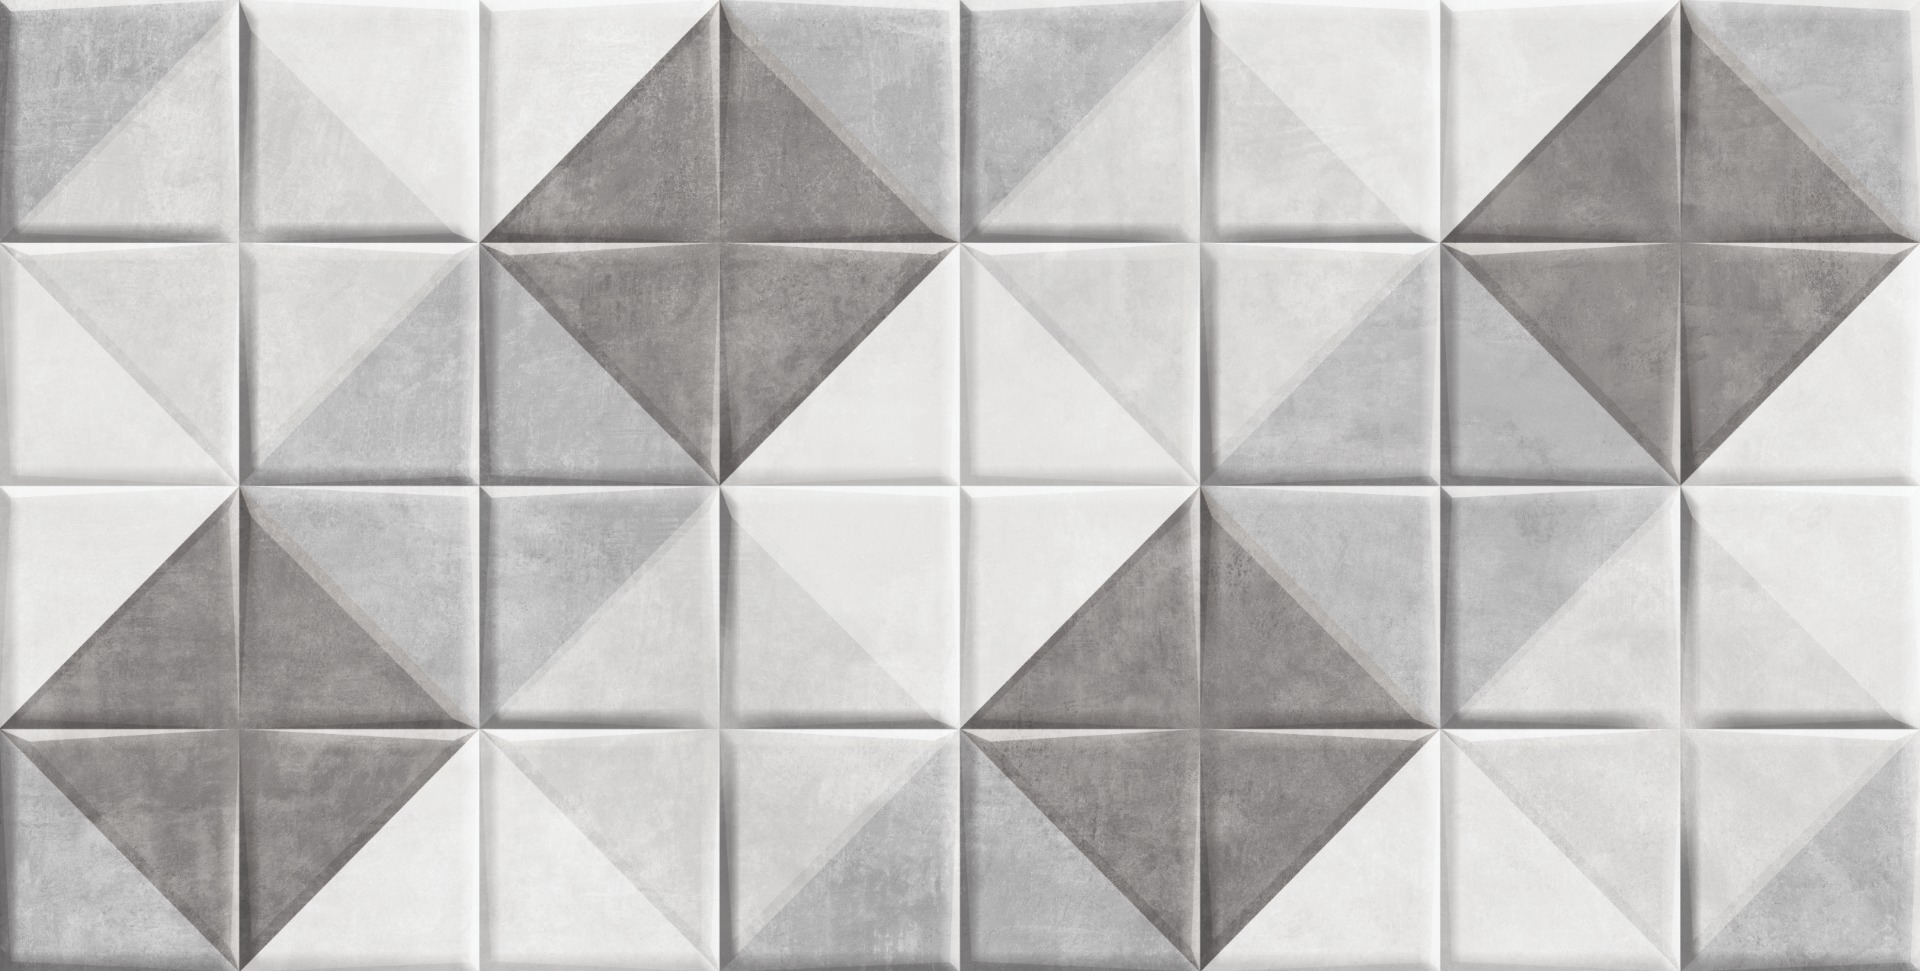 Vitrified Tiles for Bathroom Tiles, Living Room Tiles, Kitchen Tiles, Bedroom Tiles, Accent Tiles, Automotive Tiles, Bar/Restaurant, Commercial/Office